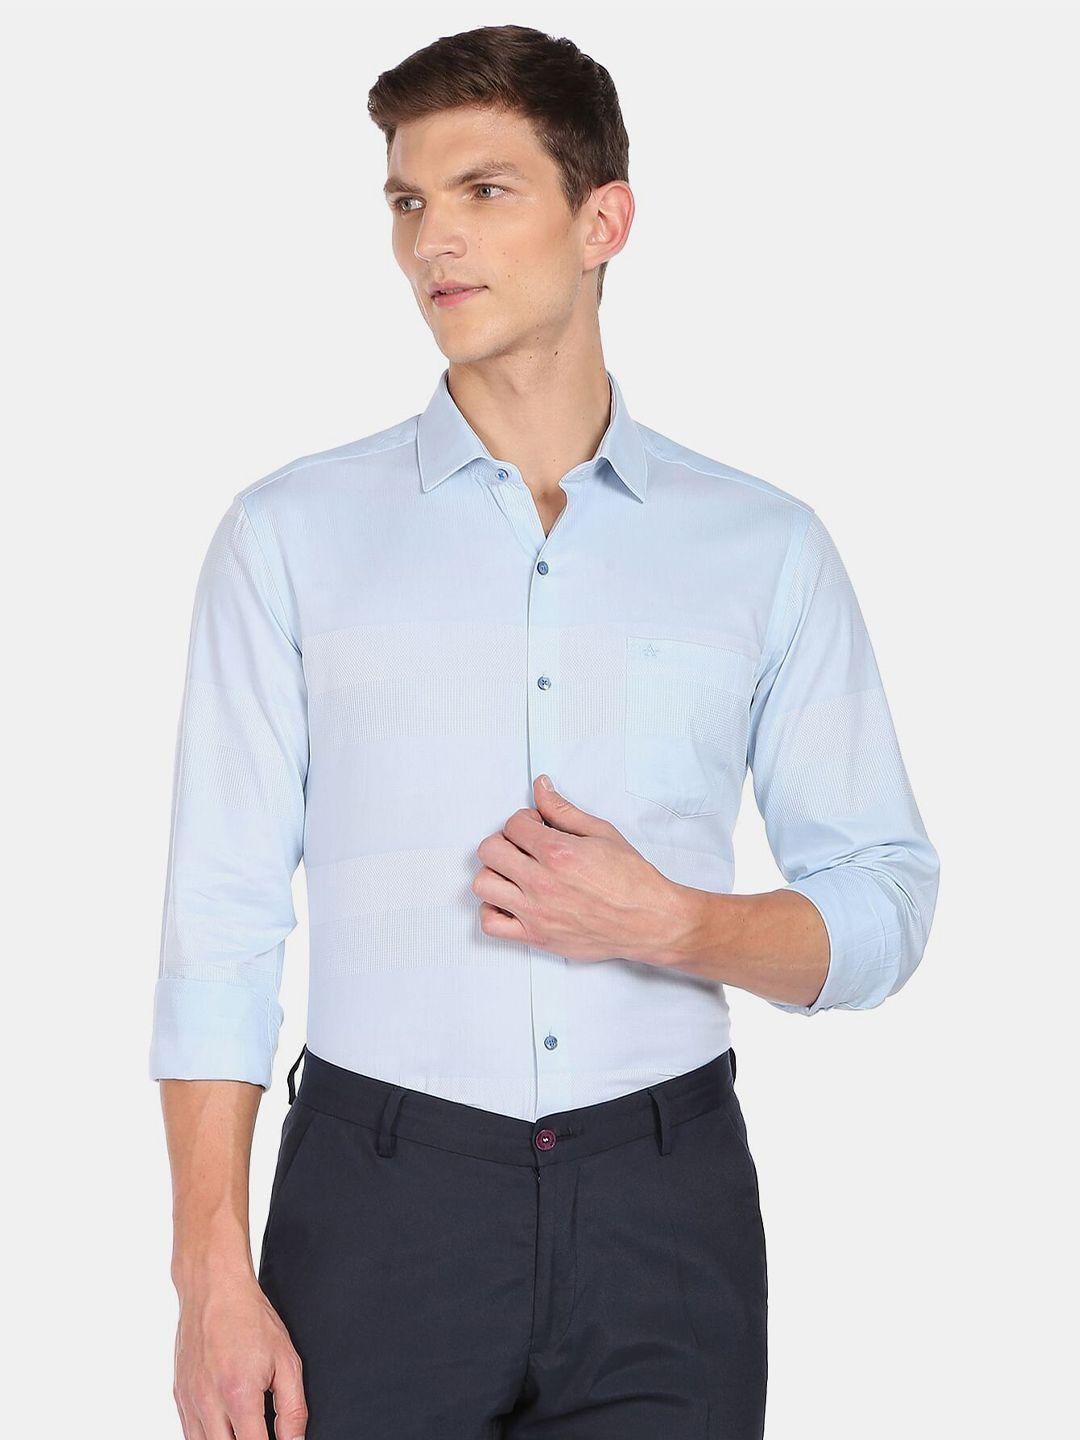 arrow men slim fit pure cotton formal shirt